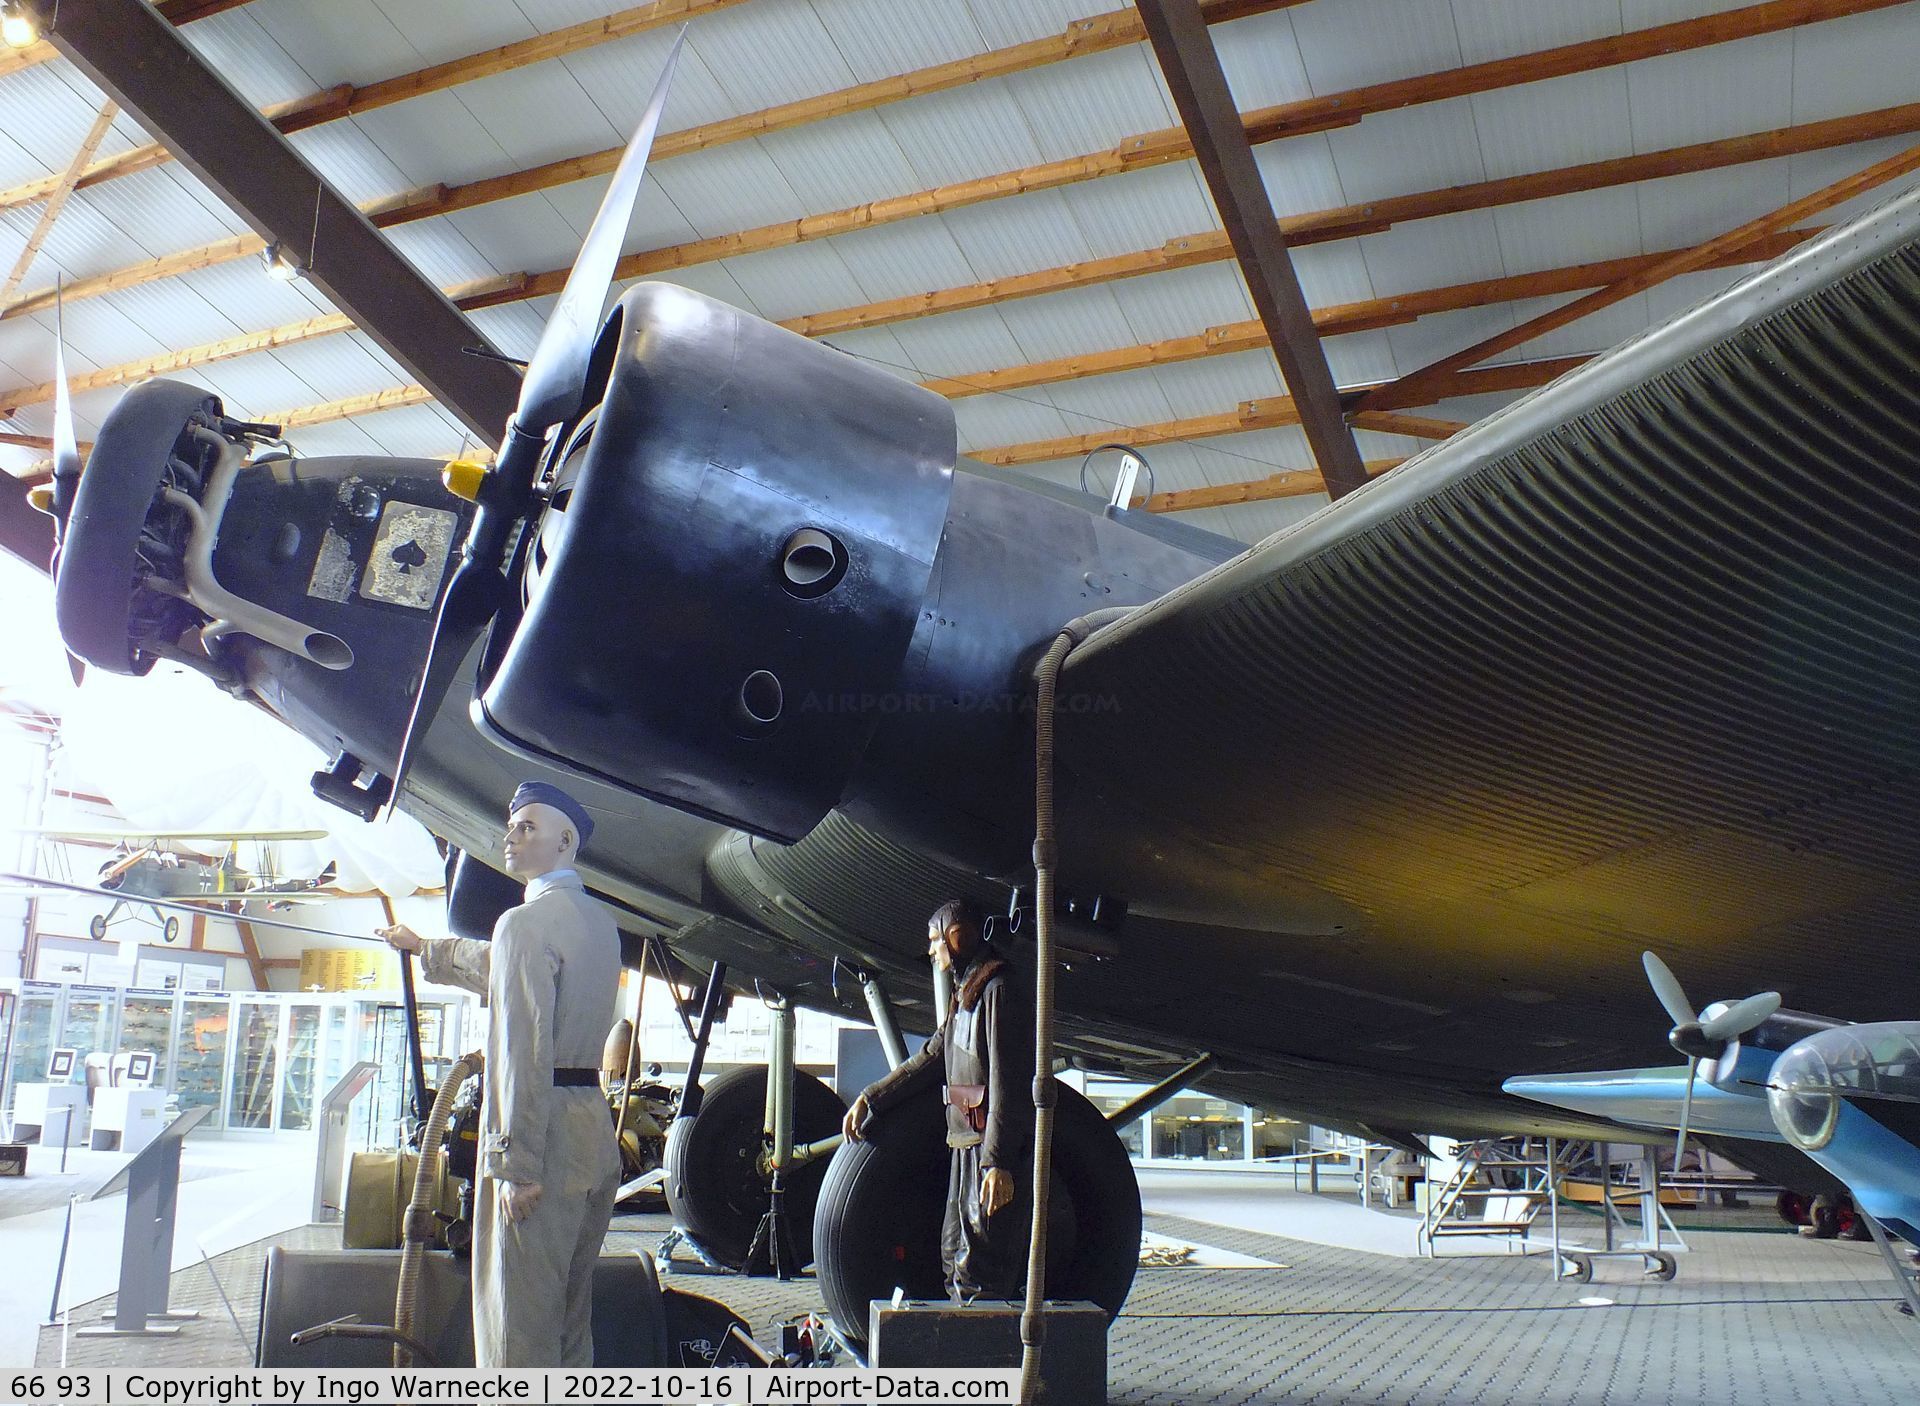 66 93, 1939 Junkers Ju-52/3mg4e C/N 6693, Junkers Ju 52/3m g4e at the Ju52-Halle (Lufttransportmuseum), Wunstorf